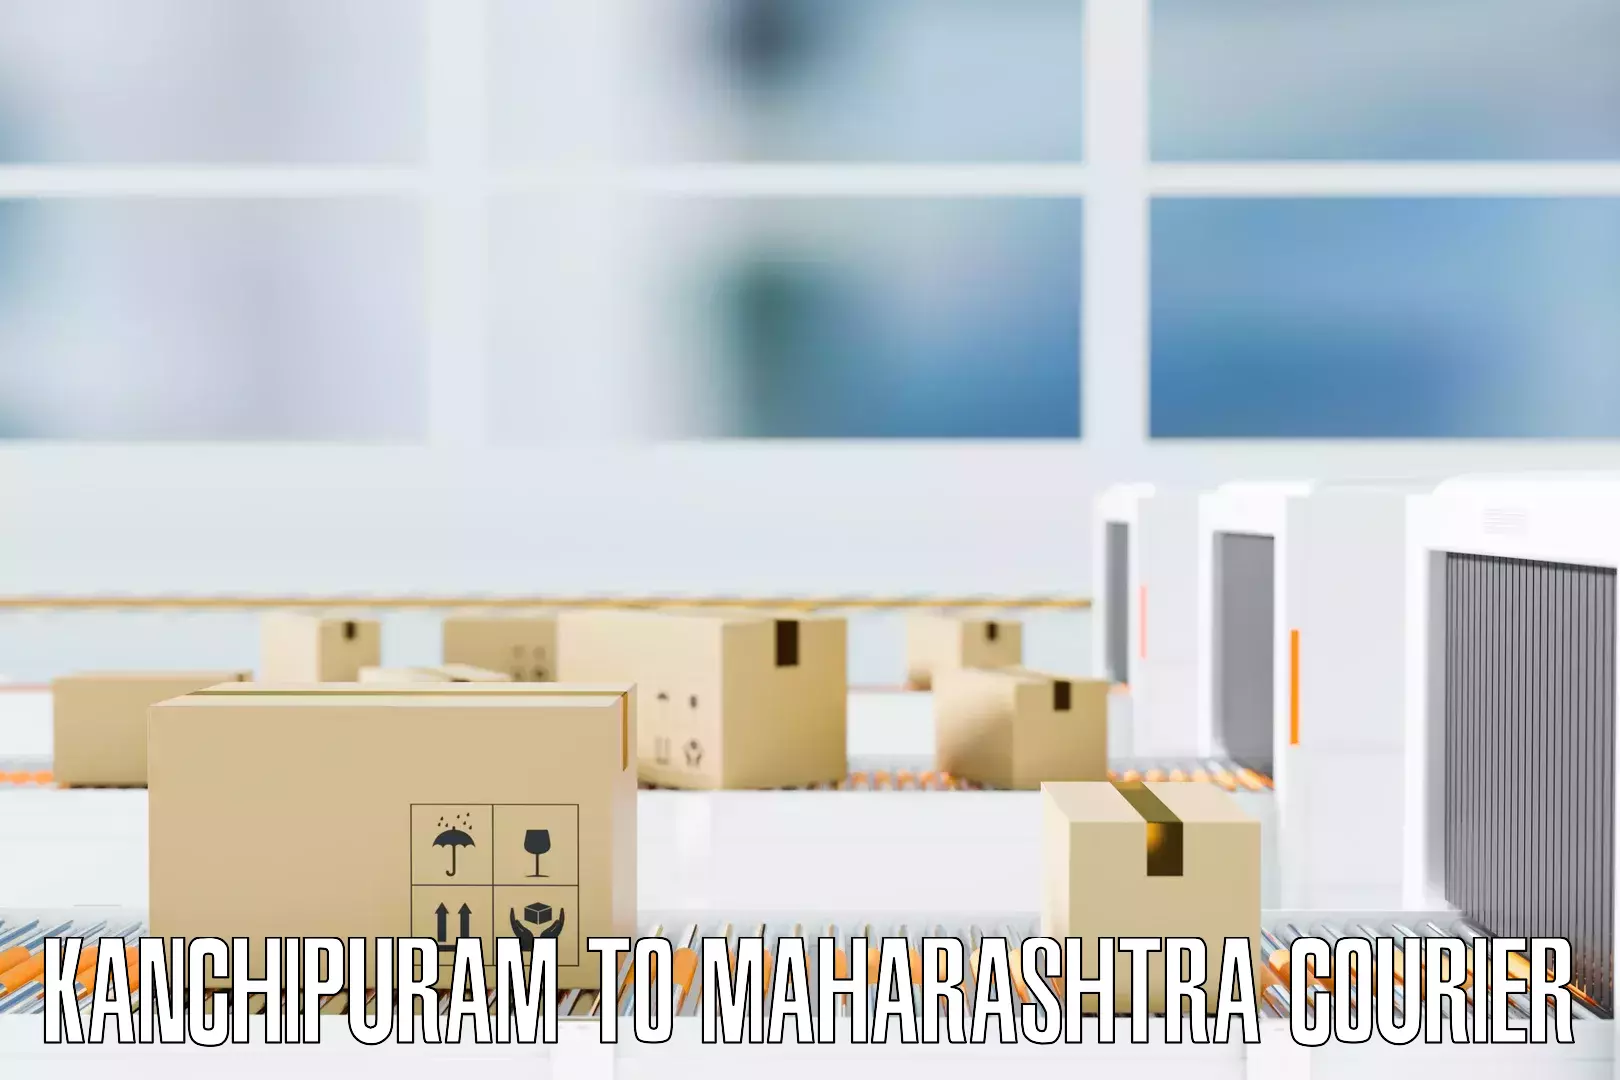 Professional packing and transport Kanchipuram to Maharashtra